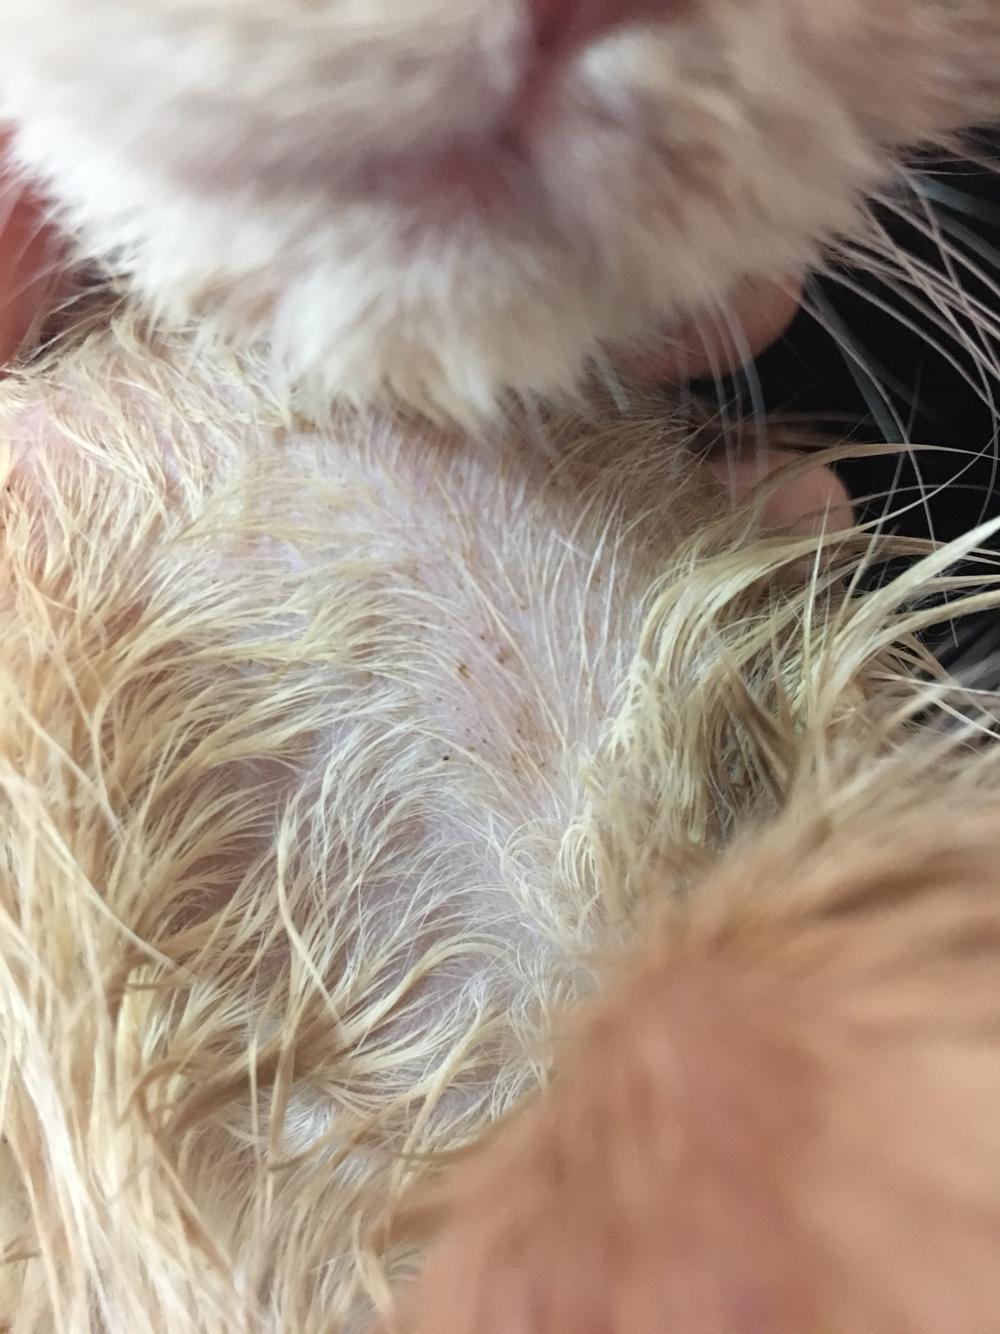 猫身上生猫癣的皮肤在用药一段时间后(三星期左右)发现了褐色